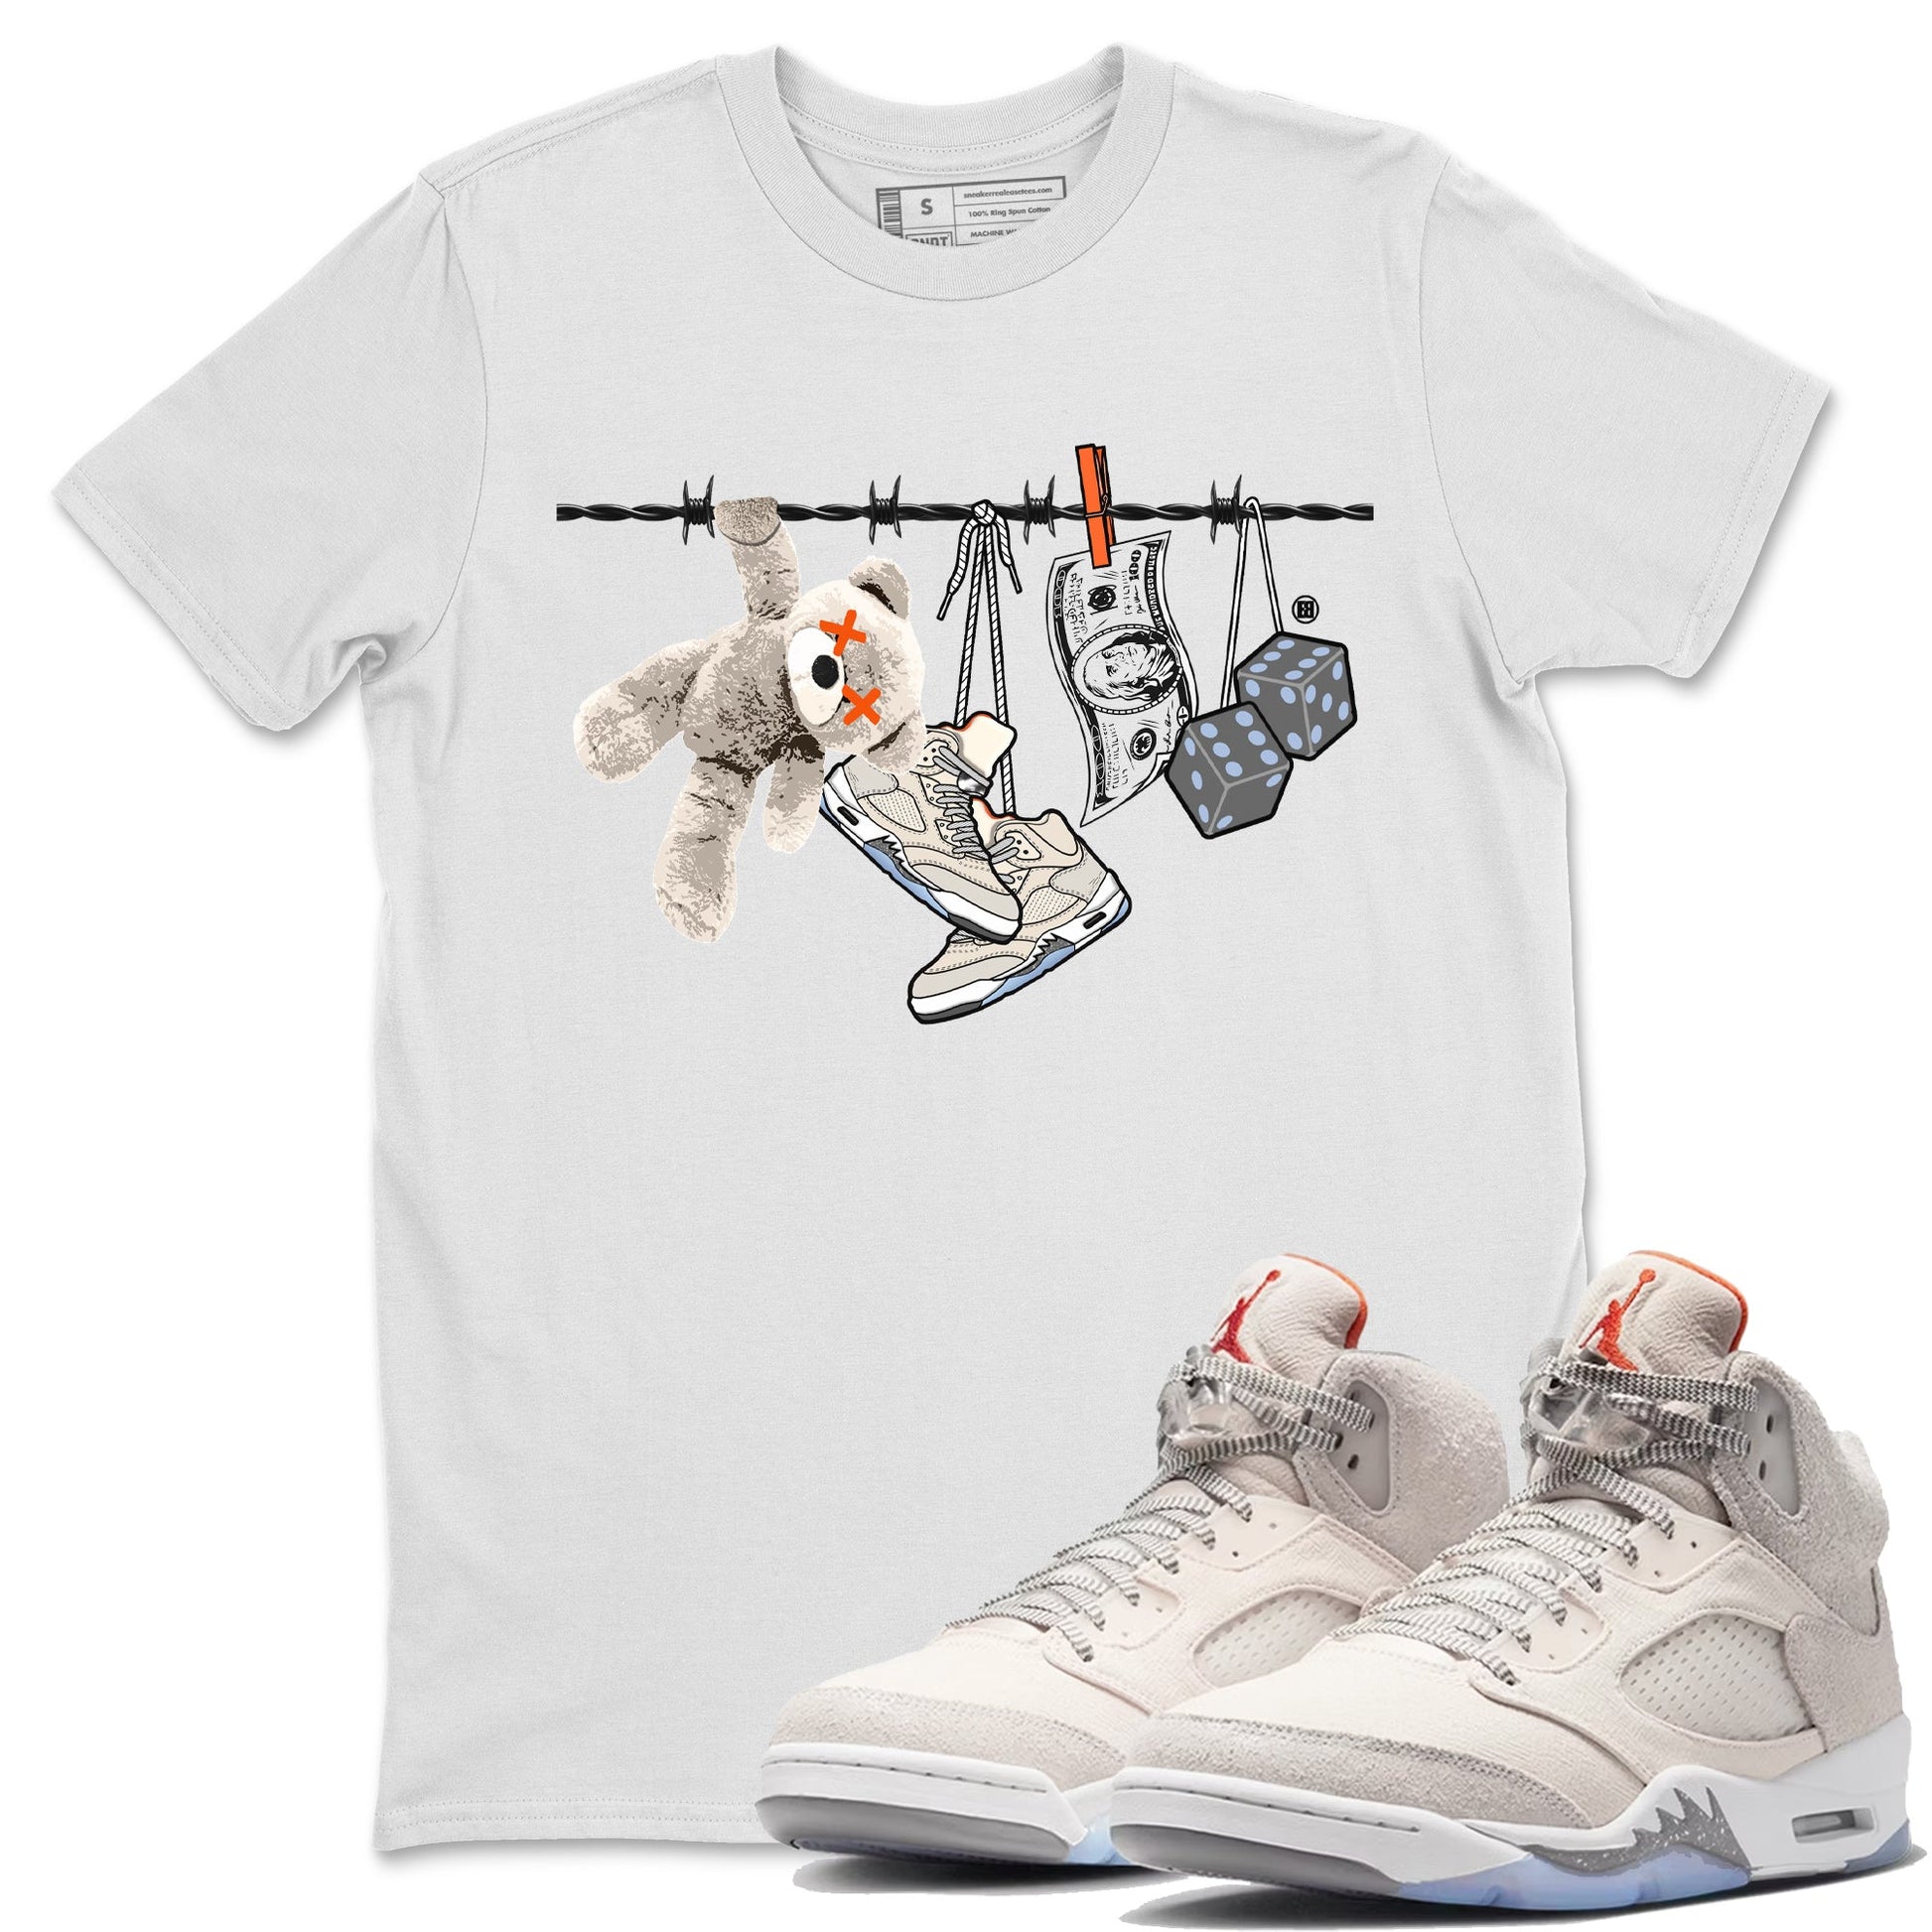 Air Jordan 5 Craft Sneaker Match Tees Clothesline Sneaker Tees Air Jordan 5 Retro Craft Tees Unisex Shirts White 1